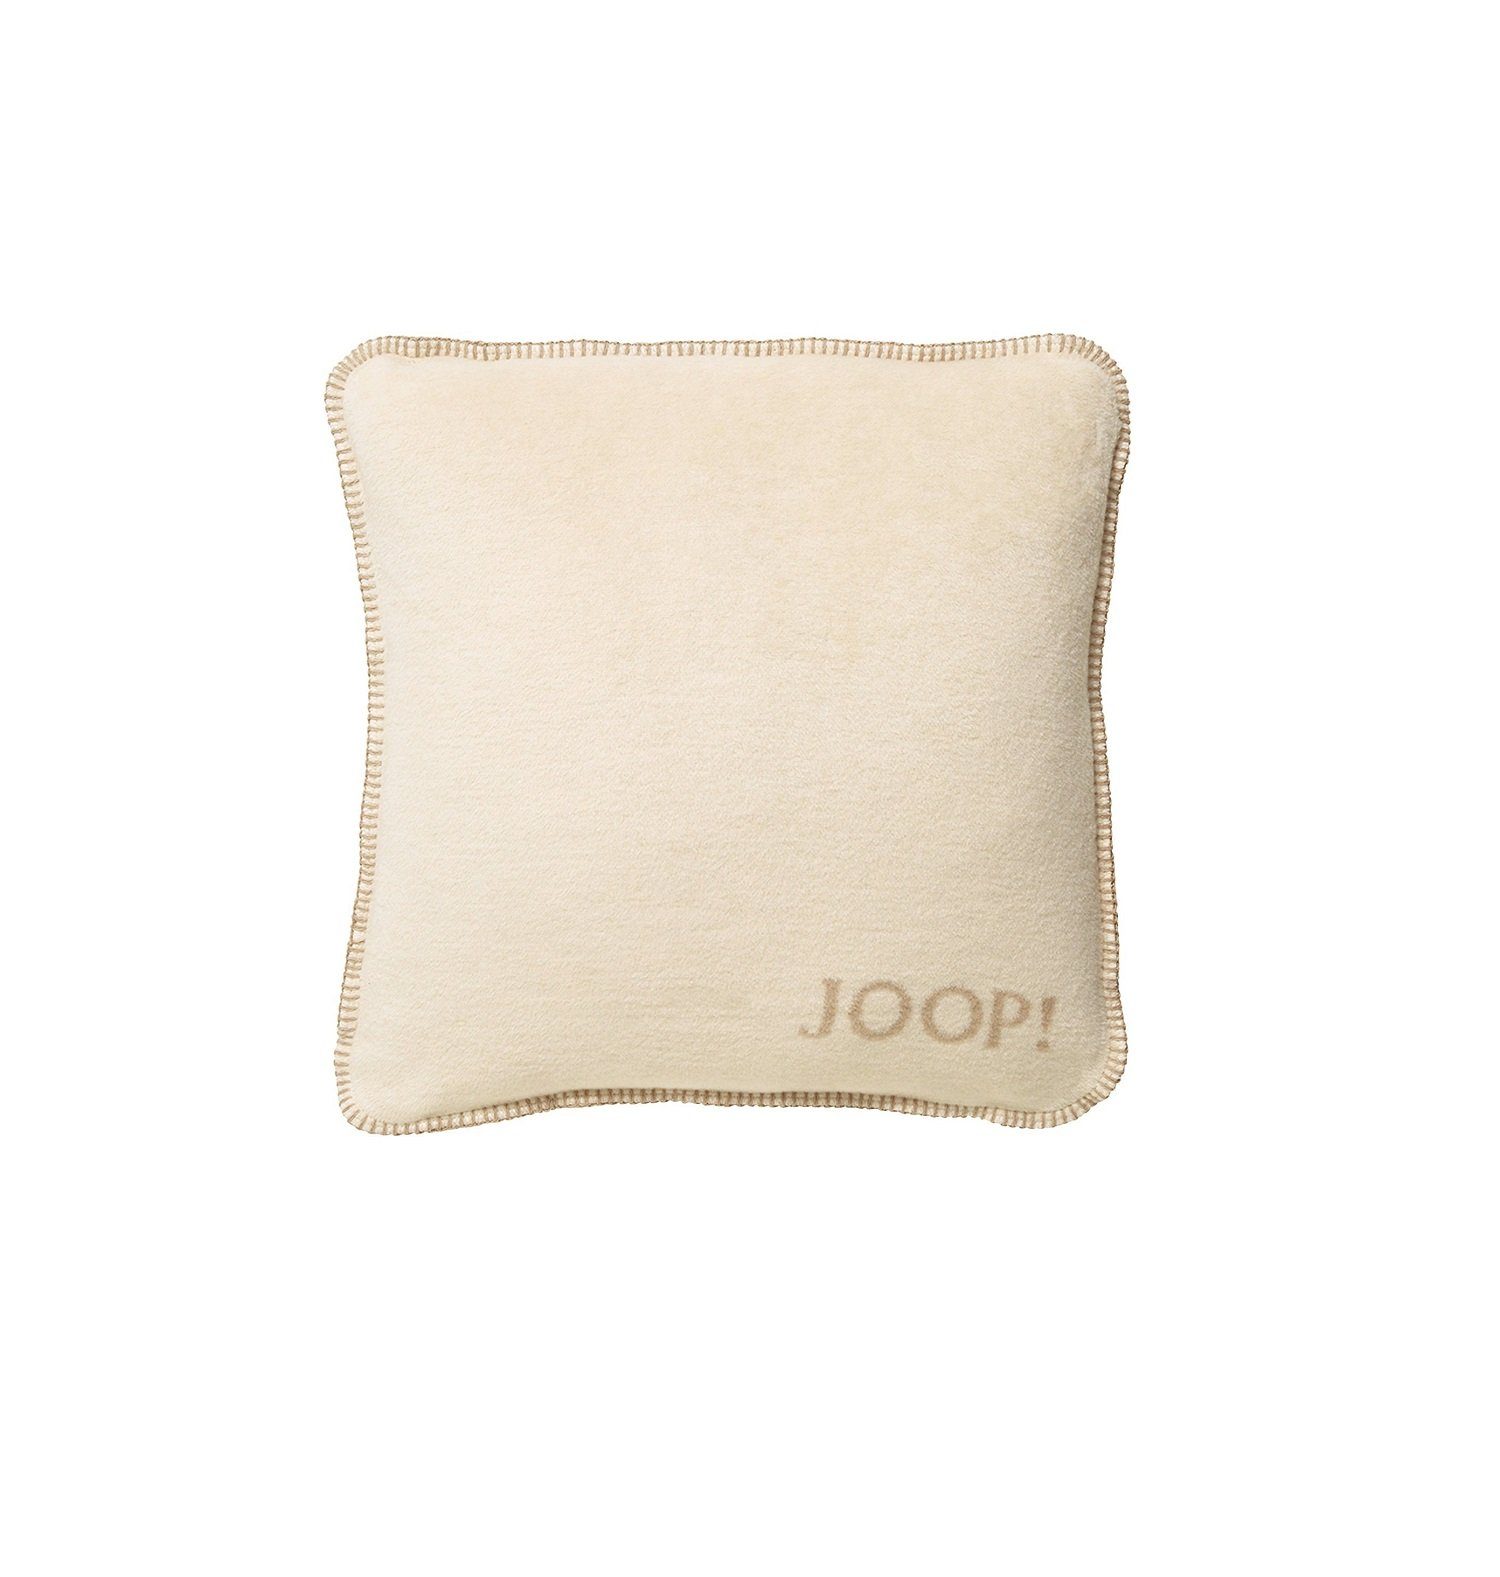 Kissenhülle JOOP! Kissenhülle Uni-Doubleface Fleece Qualität, Joop!, weiche Fleece Qualität, Reißverschluss auf der Rückseite Pergament-Sand | Kissenbezüge